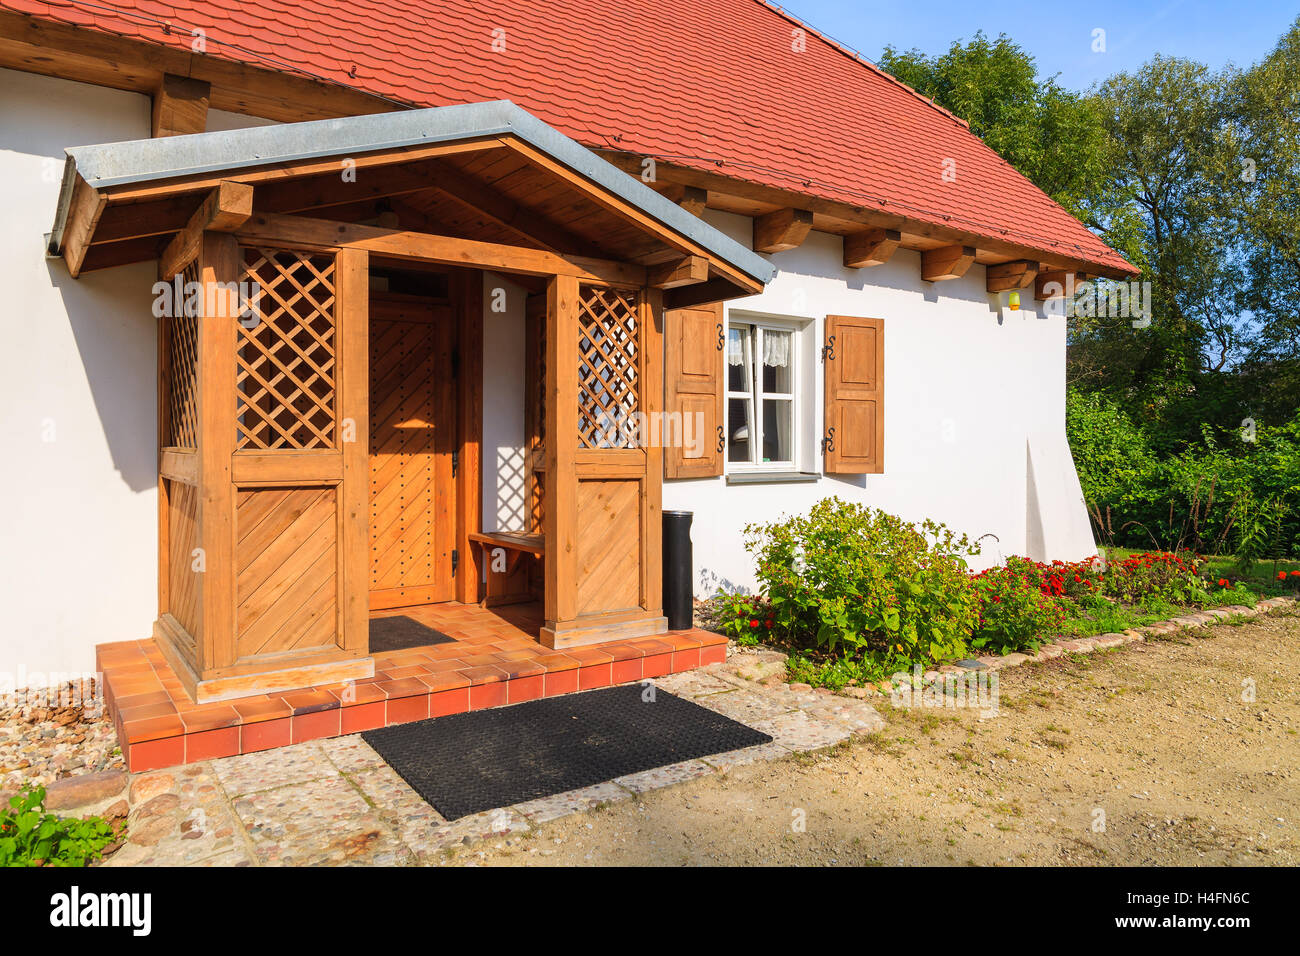 Ingresso al cottage tradizionale casa in zona rurale del villaggio di Radziejowice, Polonia Foto Stock